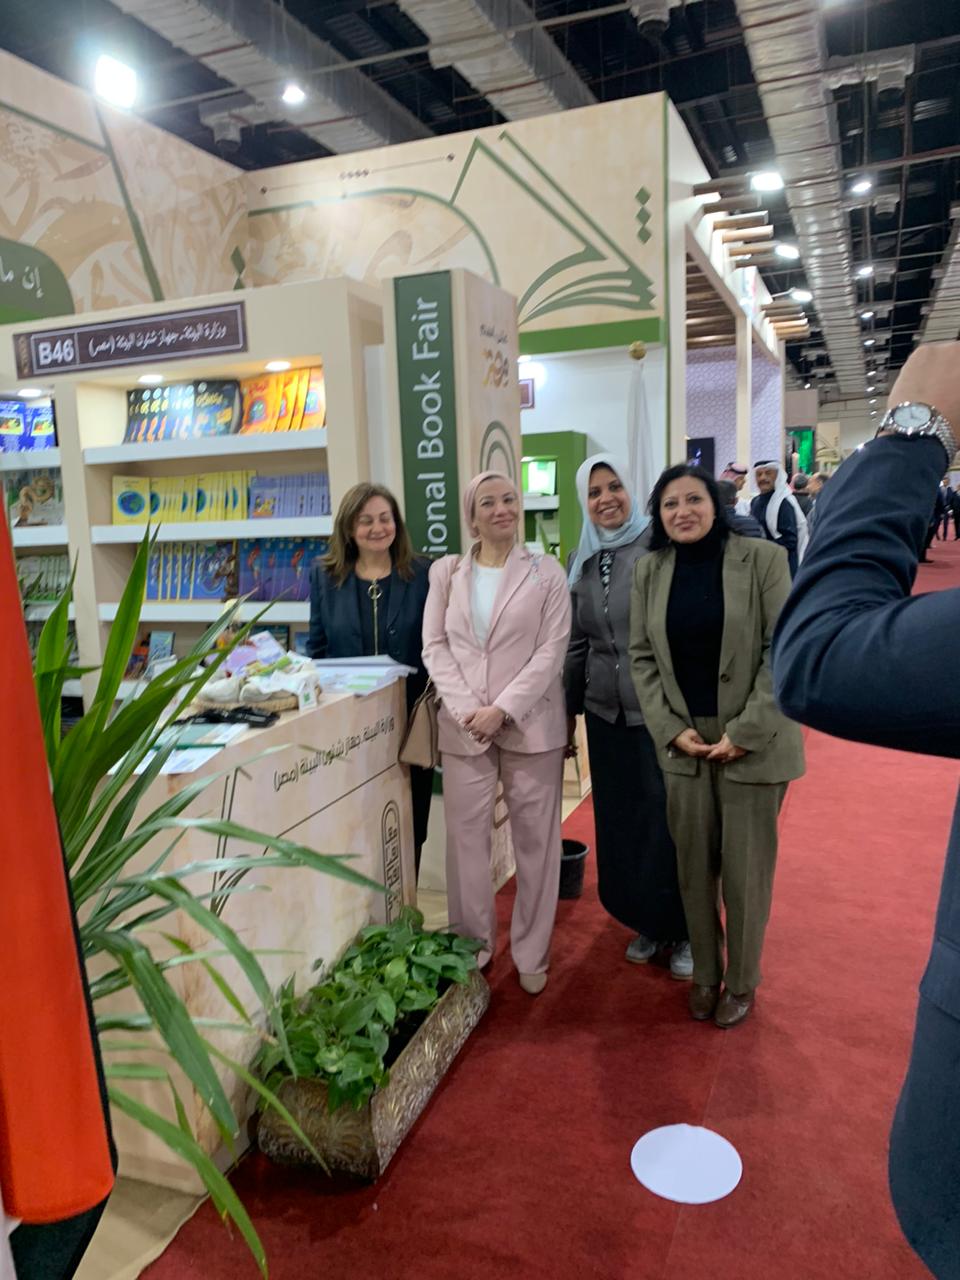 وزيرة البيئة تشارك فى افتتاح معرض القاهرة الدولي للكتاب في دورته الـ54 .. وتتفقد جناح الوزارة